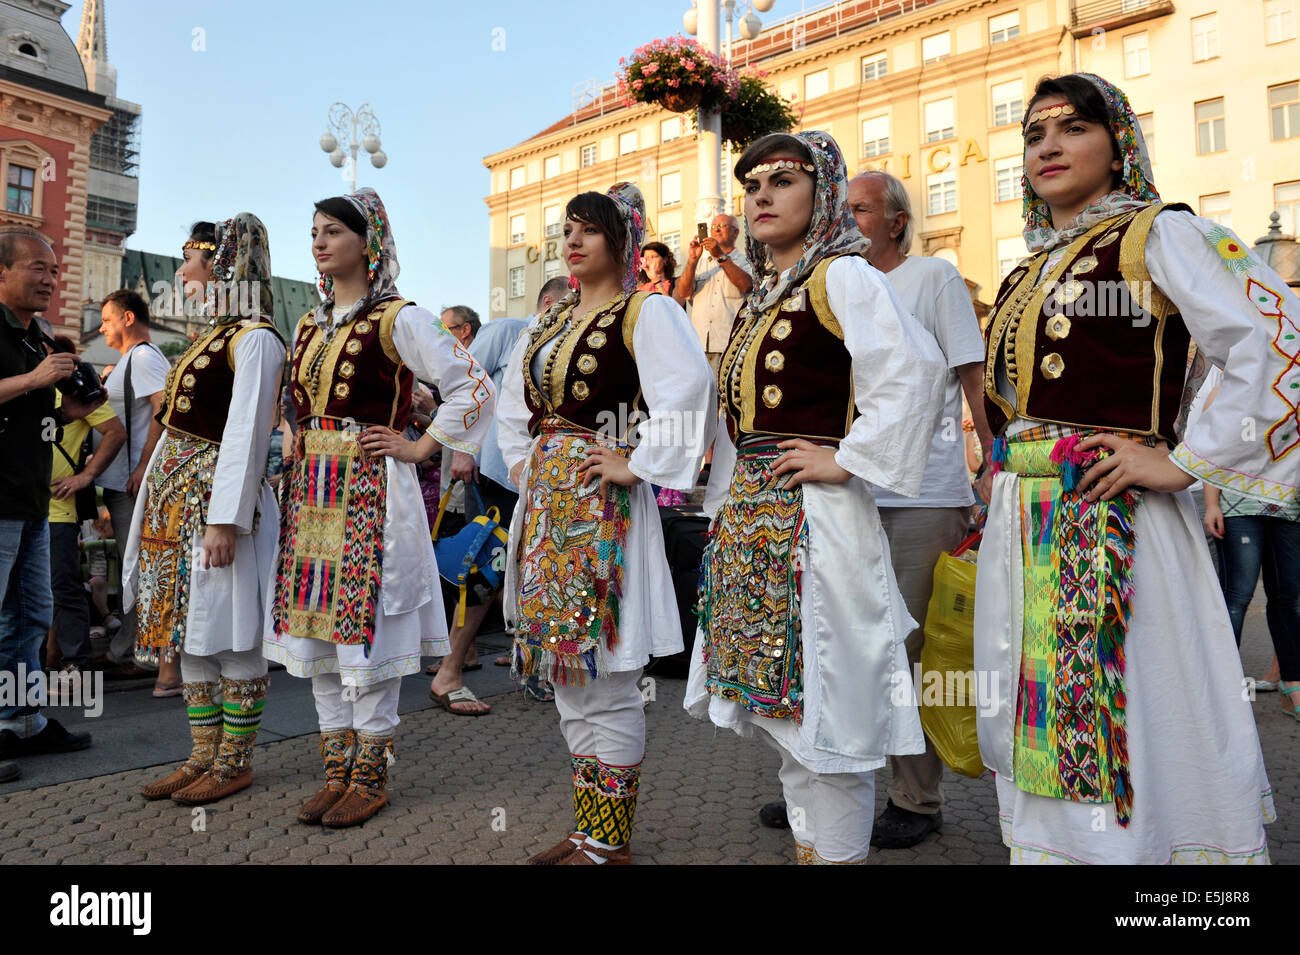 Mitglieder der Folk Gruppe albanische Kultur Gesellschaft aus Cegrane, Mazedonien während der 48. internationalen Folklore-Festival in Zagreb Stockfoto